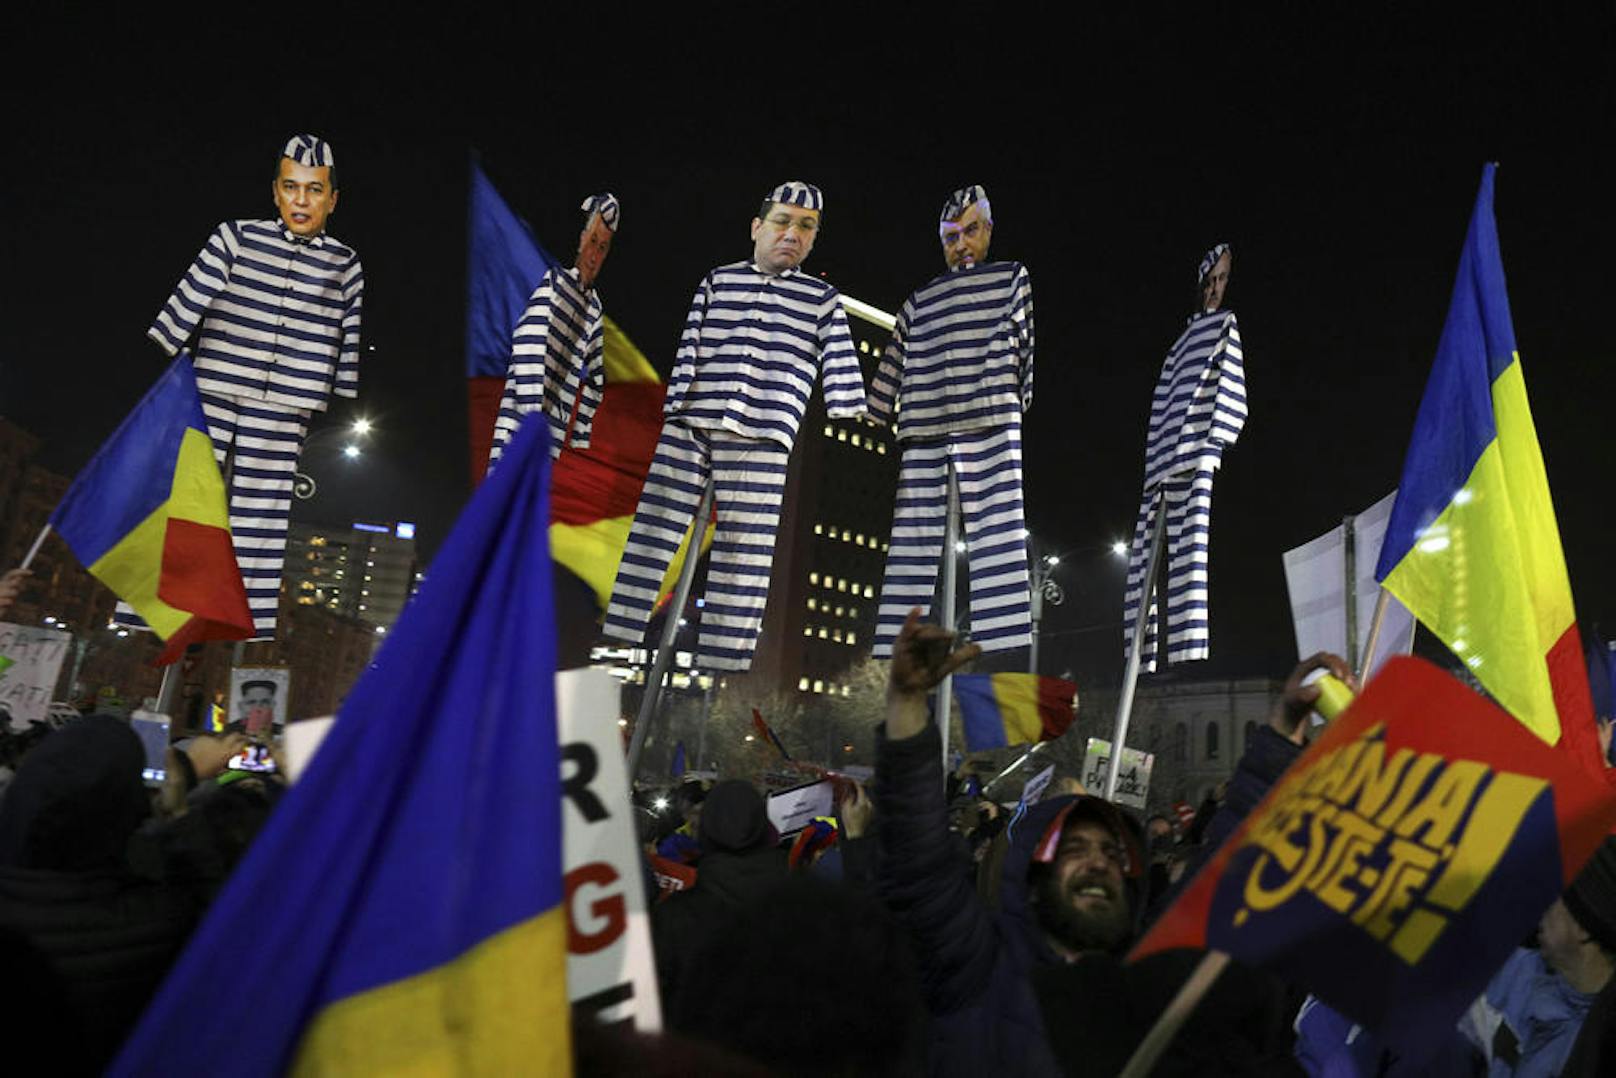 <b>29. Jänner 2017: </b>Zehntausende Menschen hatten in Rumänien gegen Pläne der Regierung protestiert, <b>Korruption</b> bis zu einer Schadensgrenze von 45.000 Euro <b>straffrei</b> zu machen. Die verabschiedete Verordnung löste Massenproteste aus, was Ministerpräsident Sorin Grindeanu am Samstag Abend zur Kenntnis nahm. Im Juni stürzte die Regierung.

<b>Mehr Infos: </b> <a href="https://www.heute.at/welt/news/story/Korruption-straffrei--Rumaenien-rudert-zurueck-26846209" target="_blank">Korruption straffrei? Rumänien rudert zurück</a>